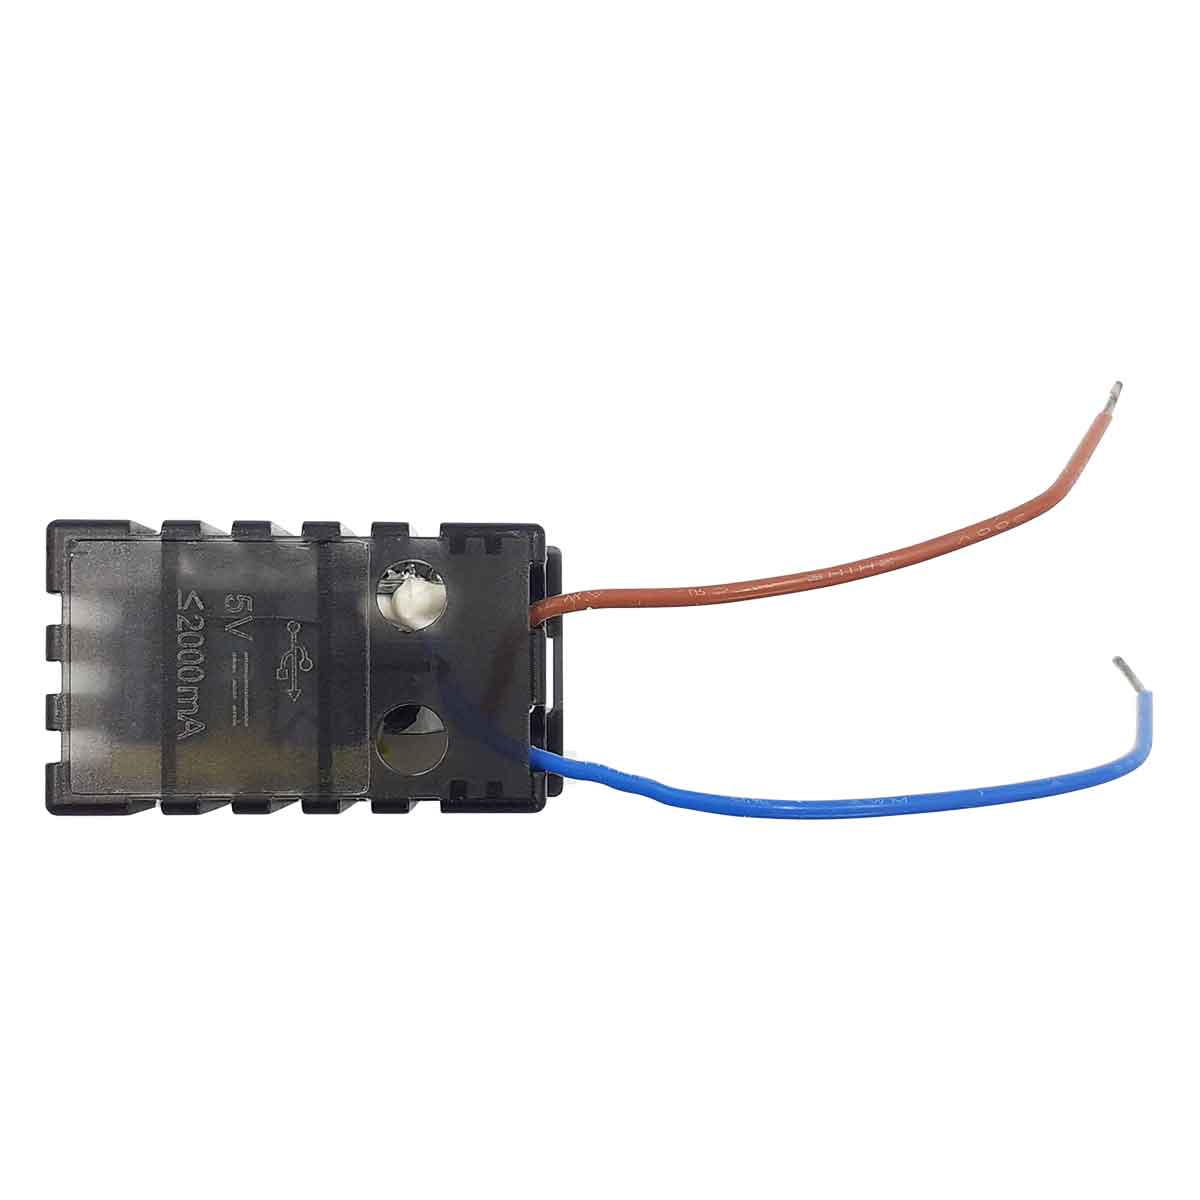 conexion para usb vista trasera con cable rojo y cable azul